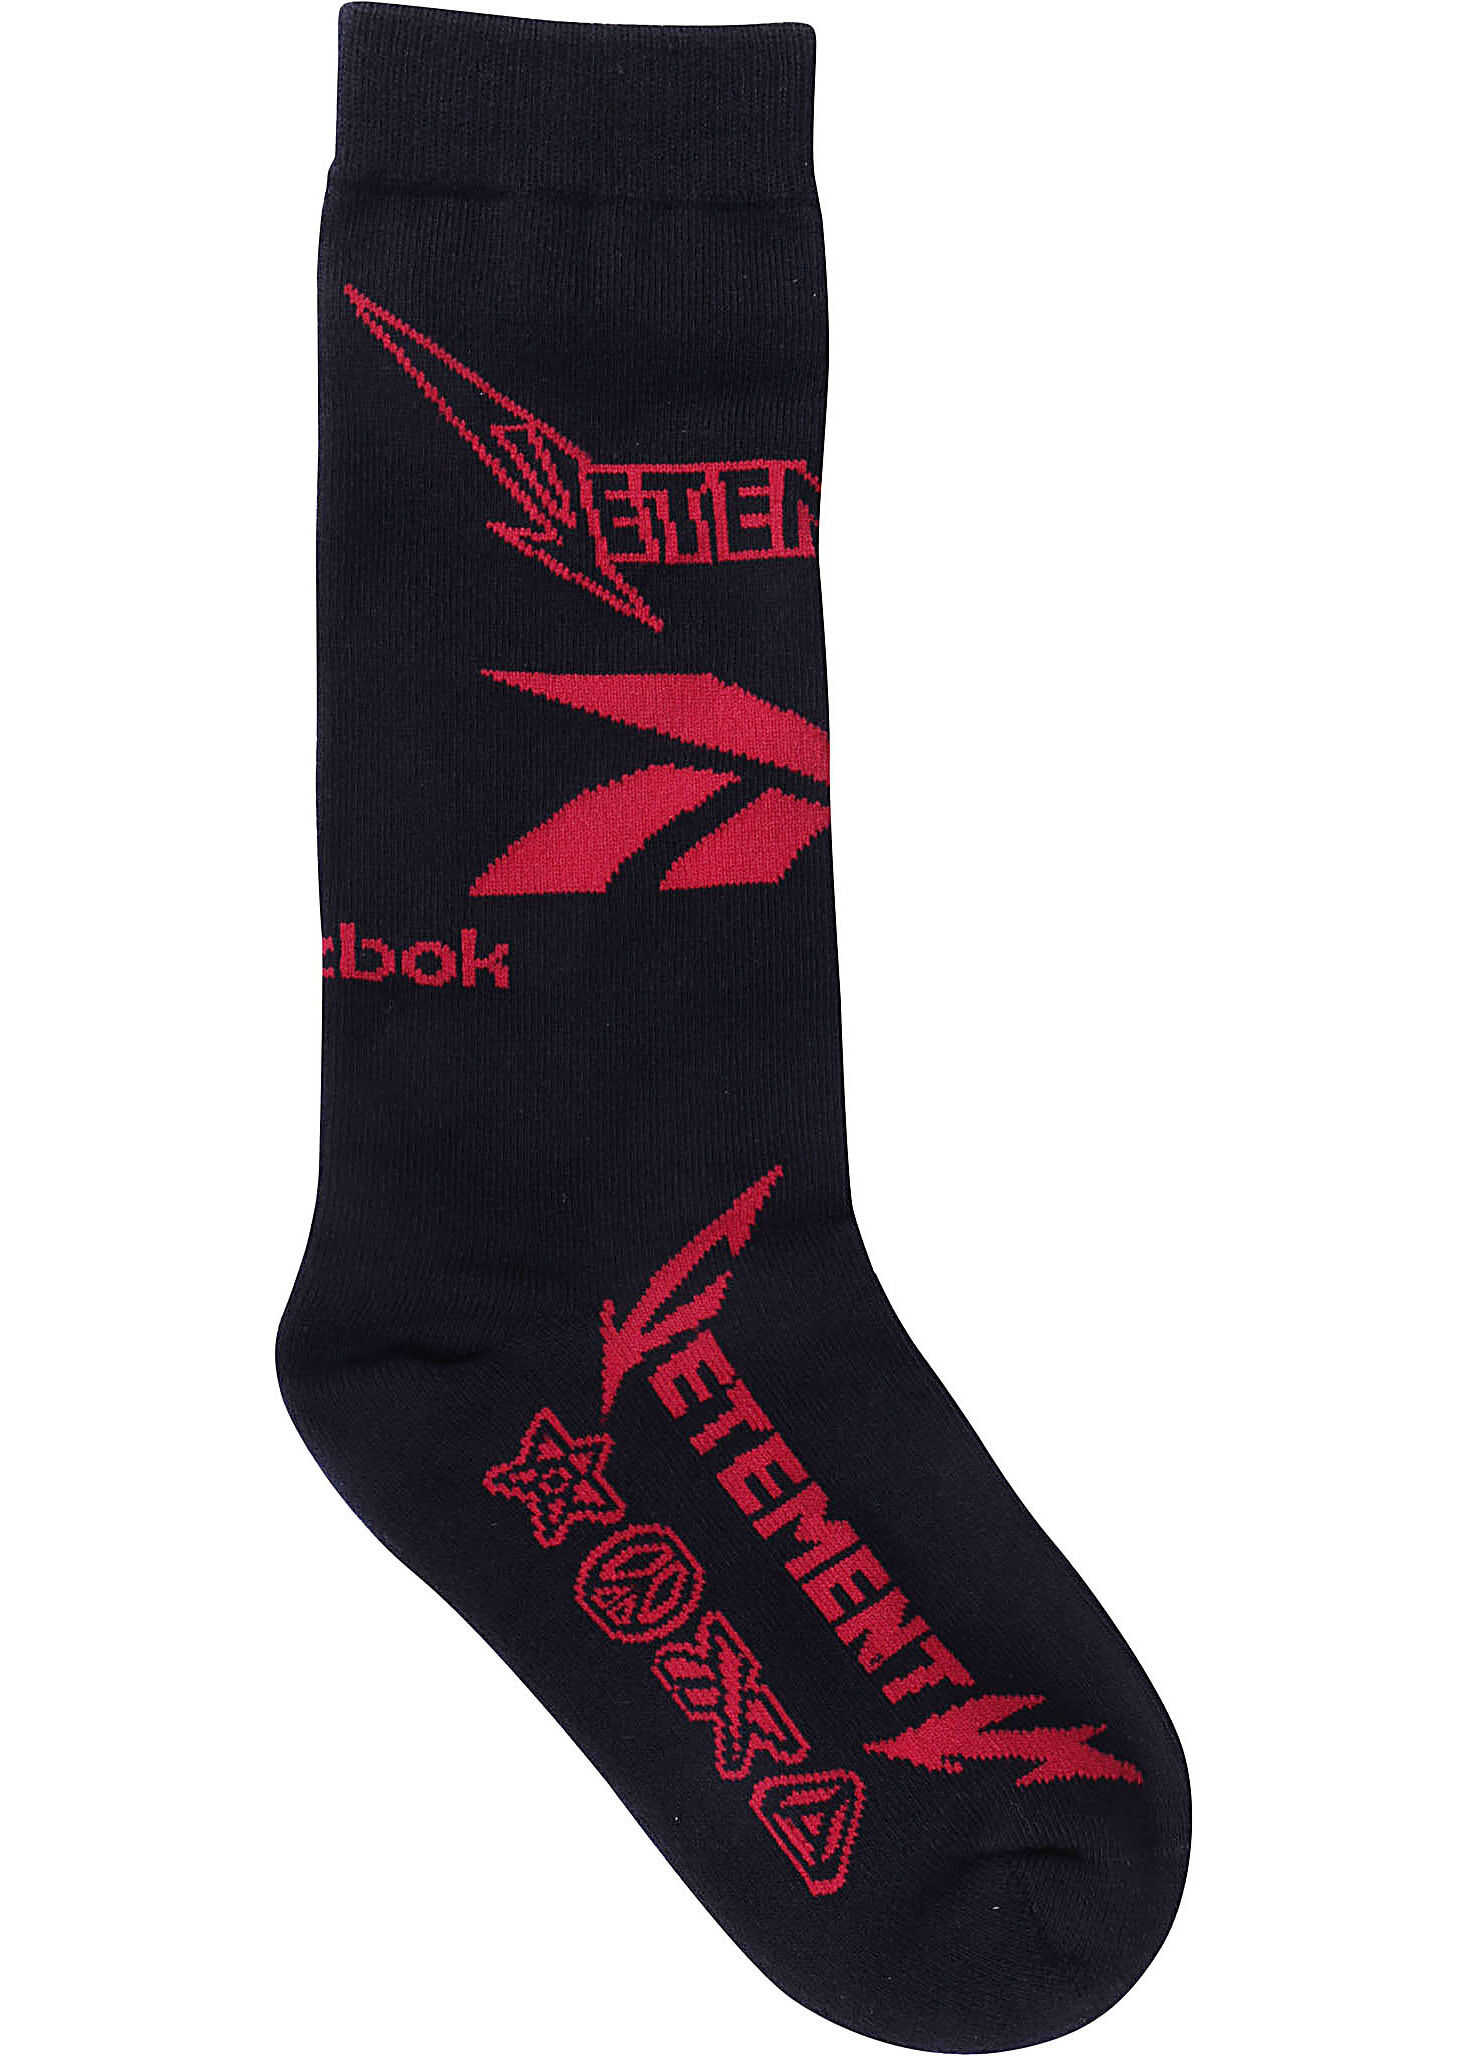 Vetements Reebok x Vetements Metal Socks BLACK RED image4